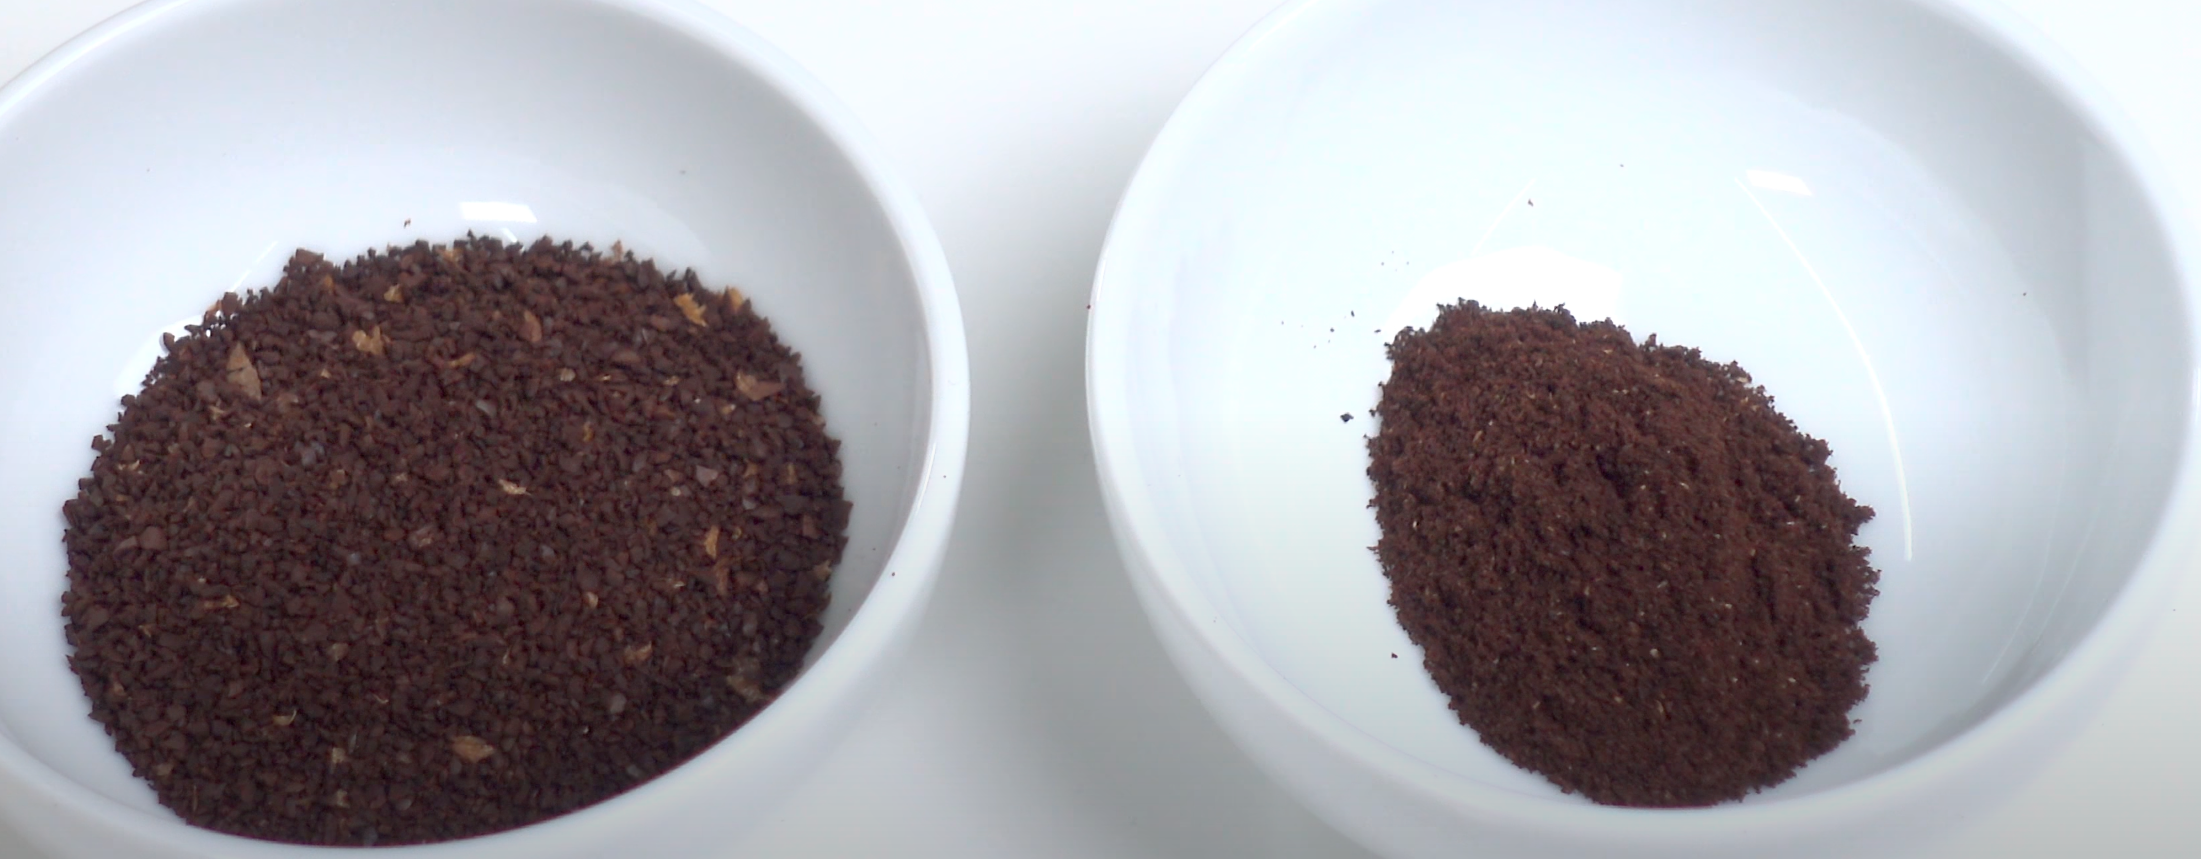 微粉と分けたコーヒー豆